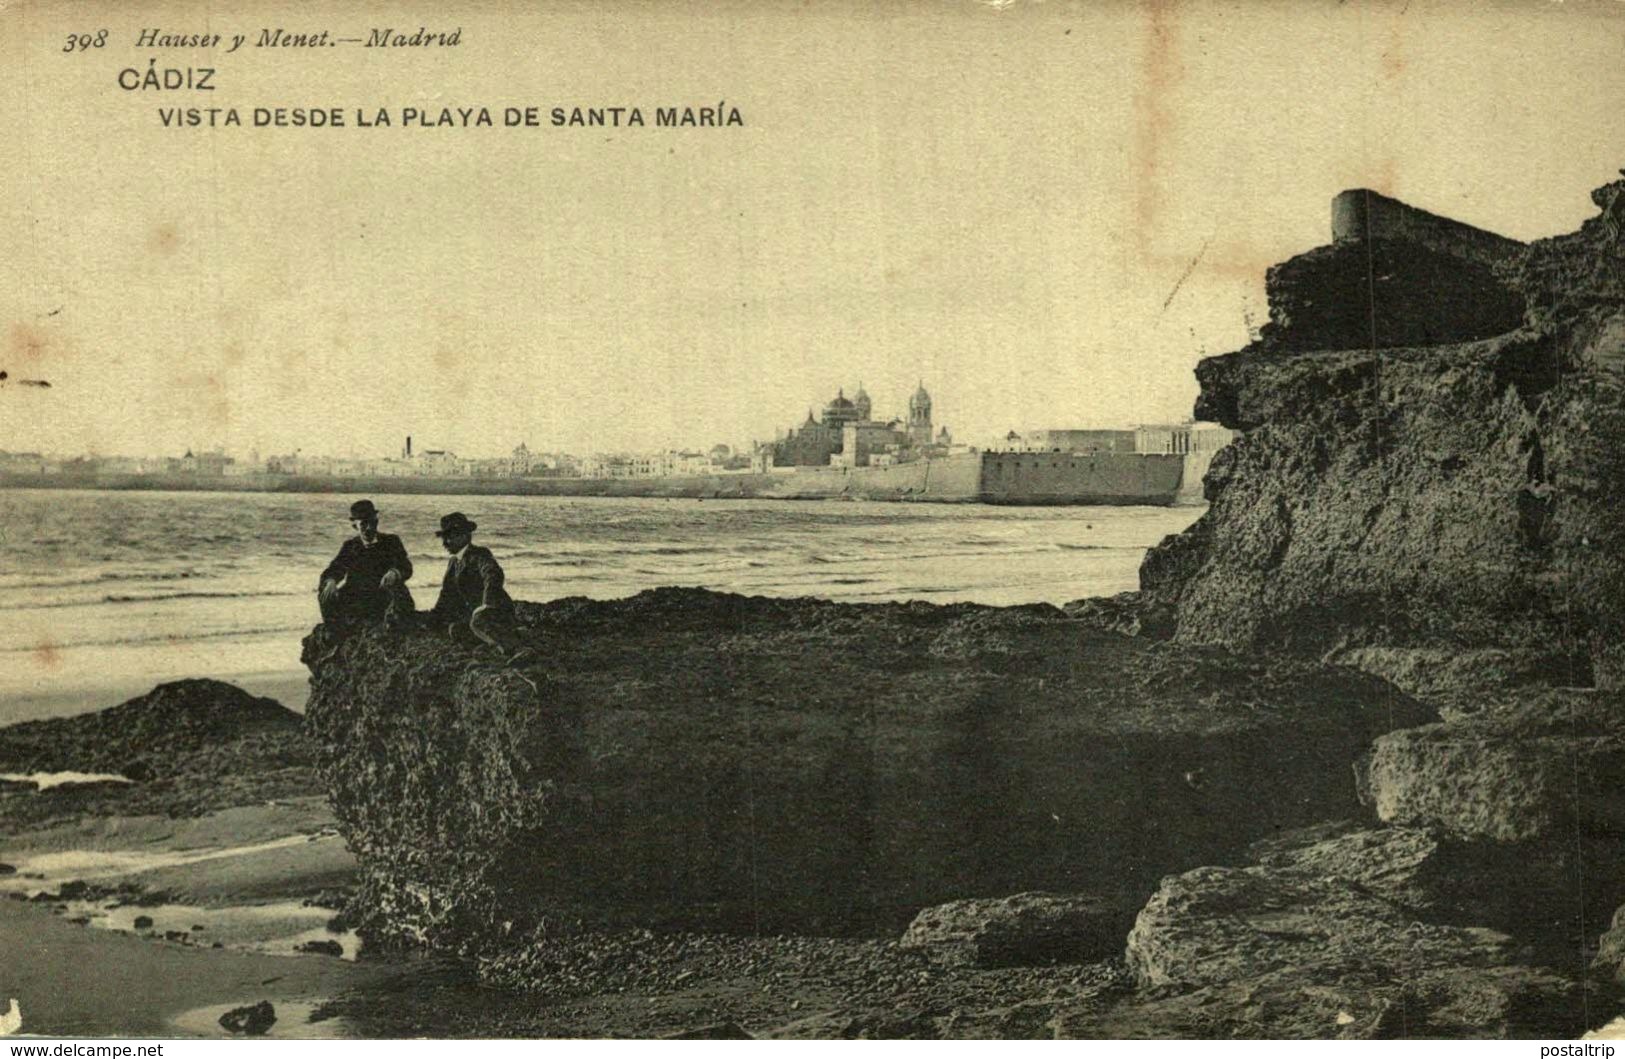 CADIZ. VISTA DESDE LA PLAYA DE SANTA MARÍA. 398. HAUSER Y MENET - Cádiz